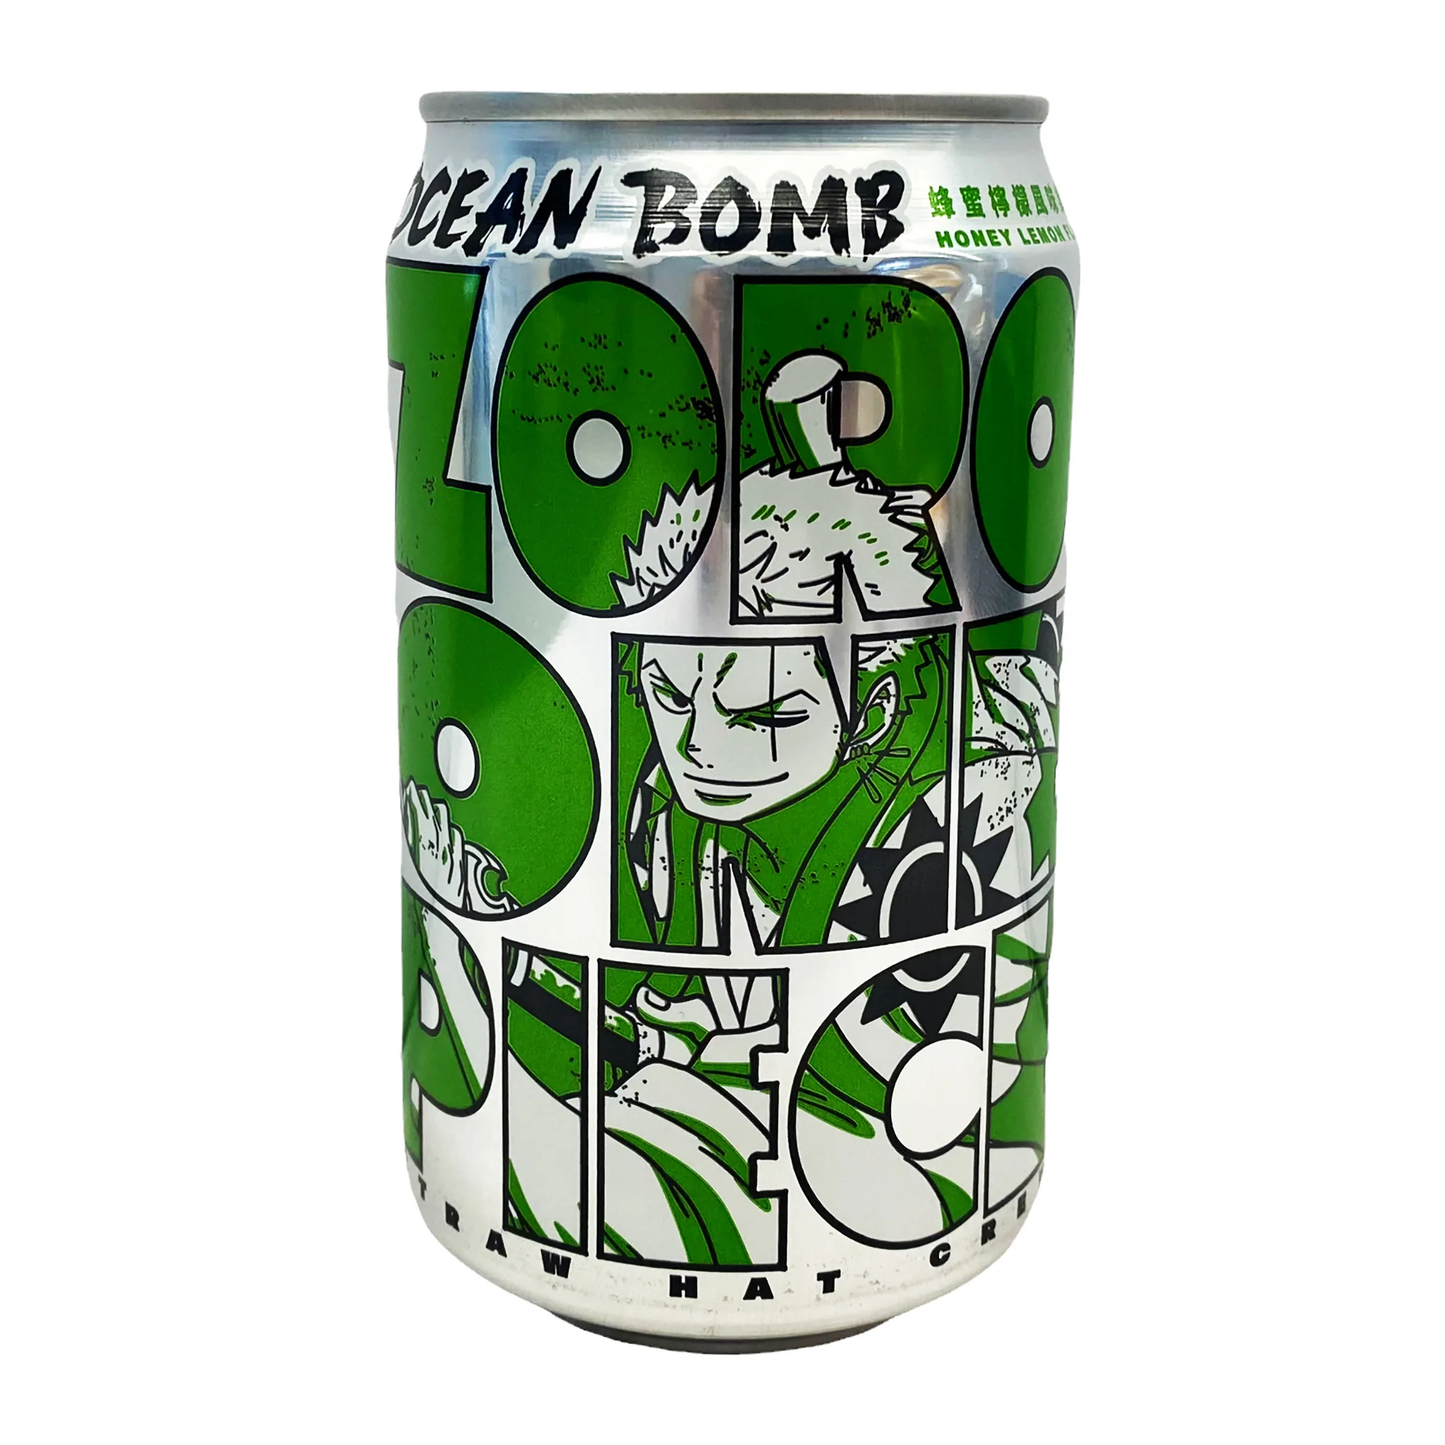 Ocean Bomb - One Piece - Honey Lemon Zoro